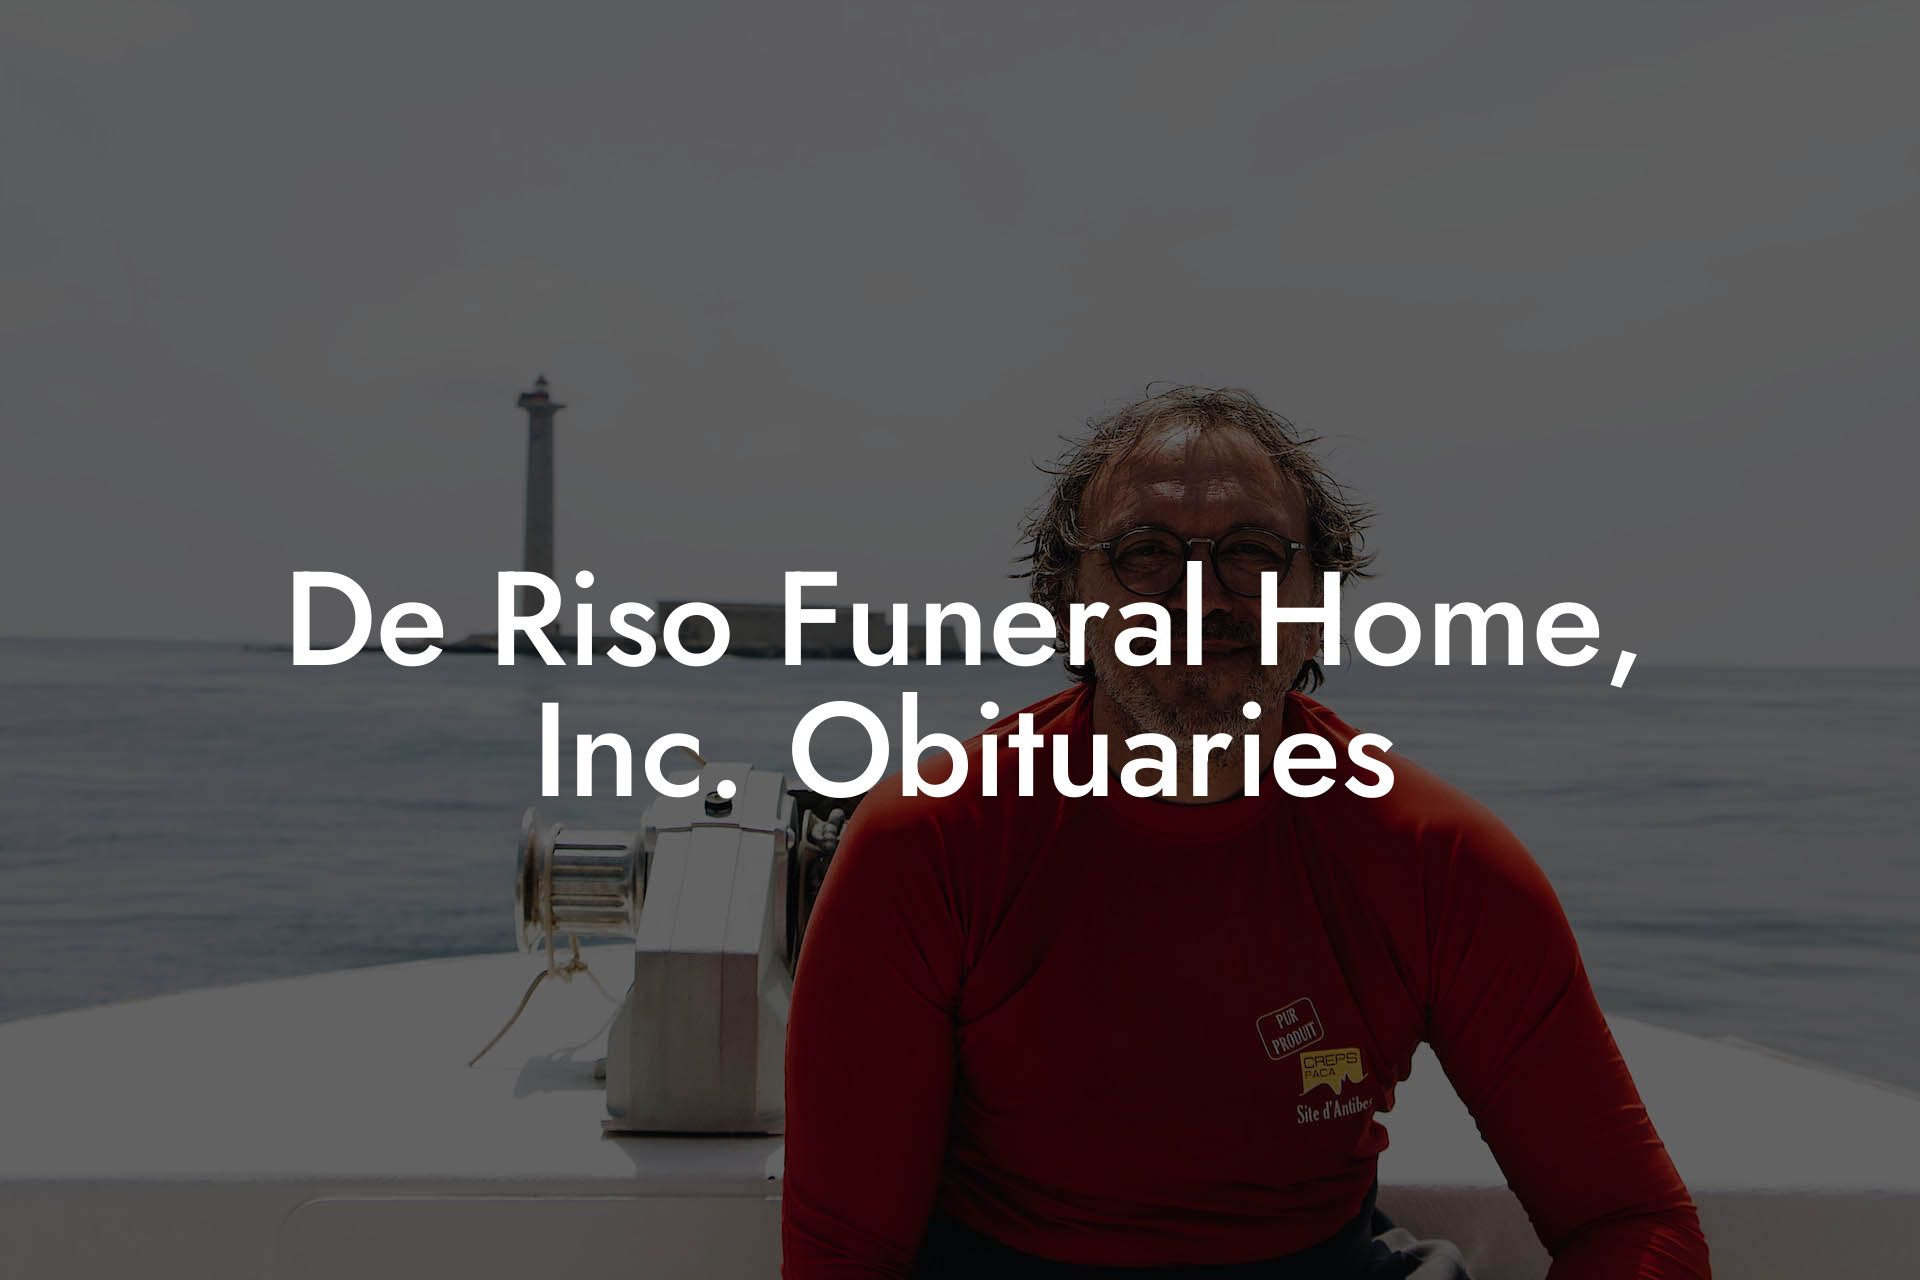 De Riso Funeral Home, Inc. Obituaries